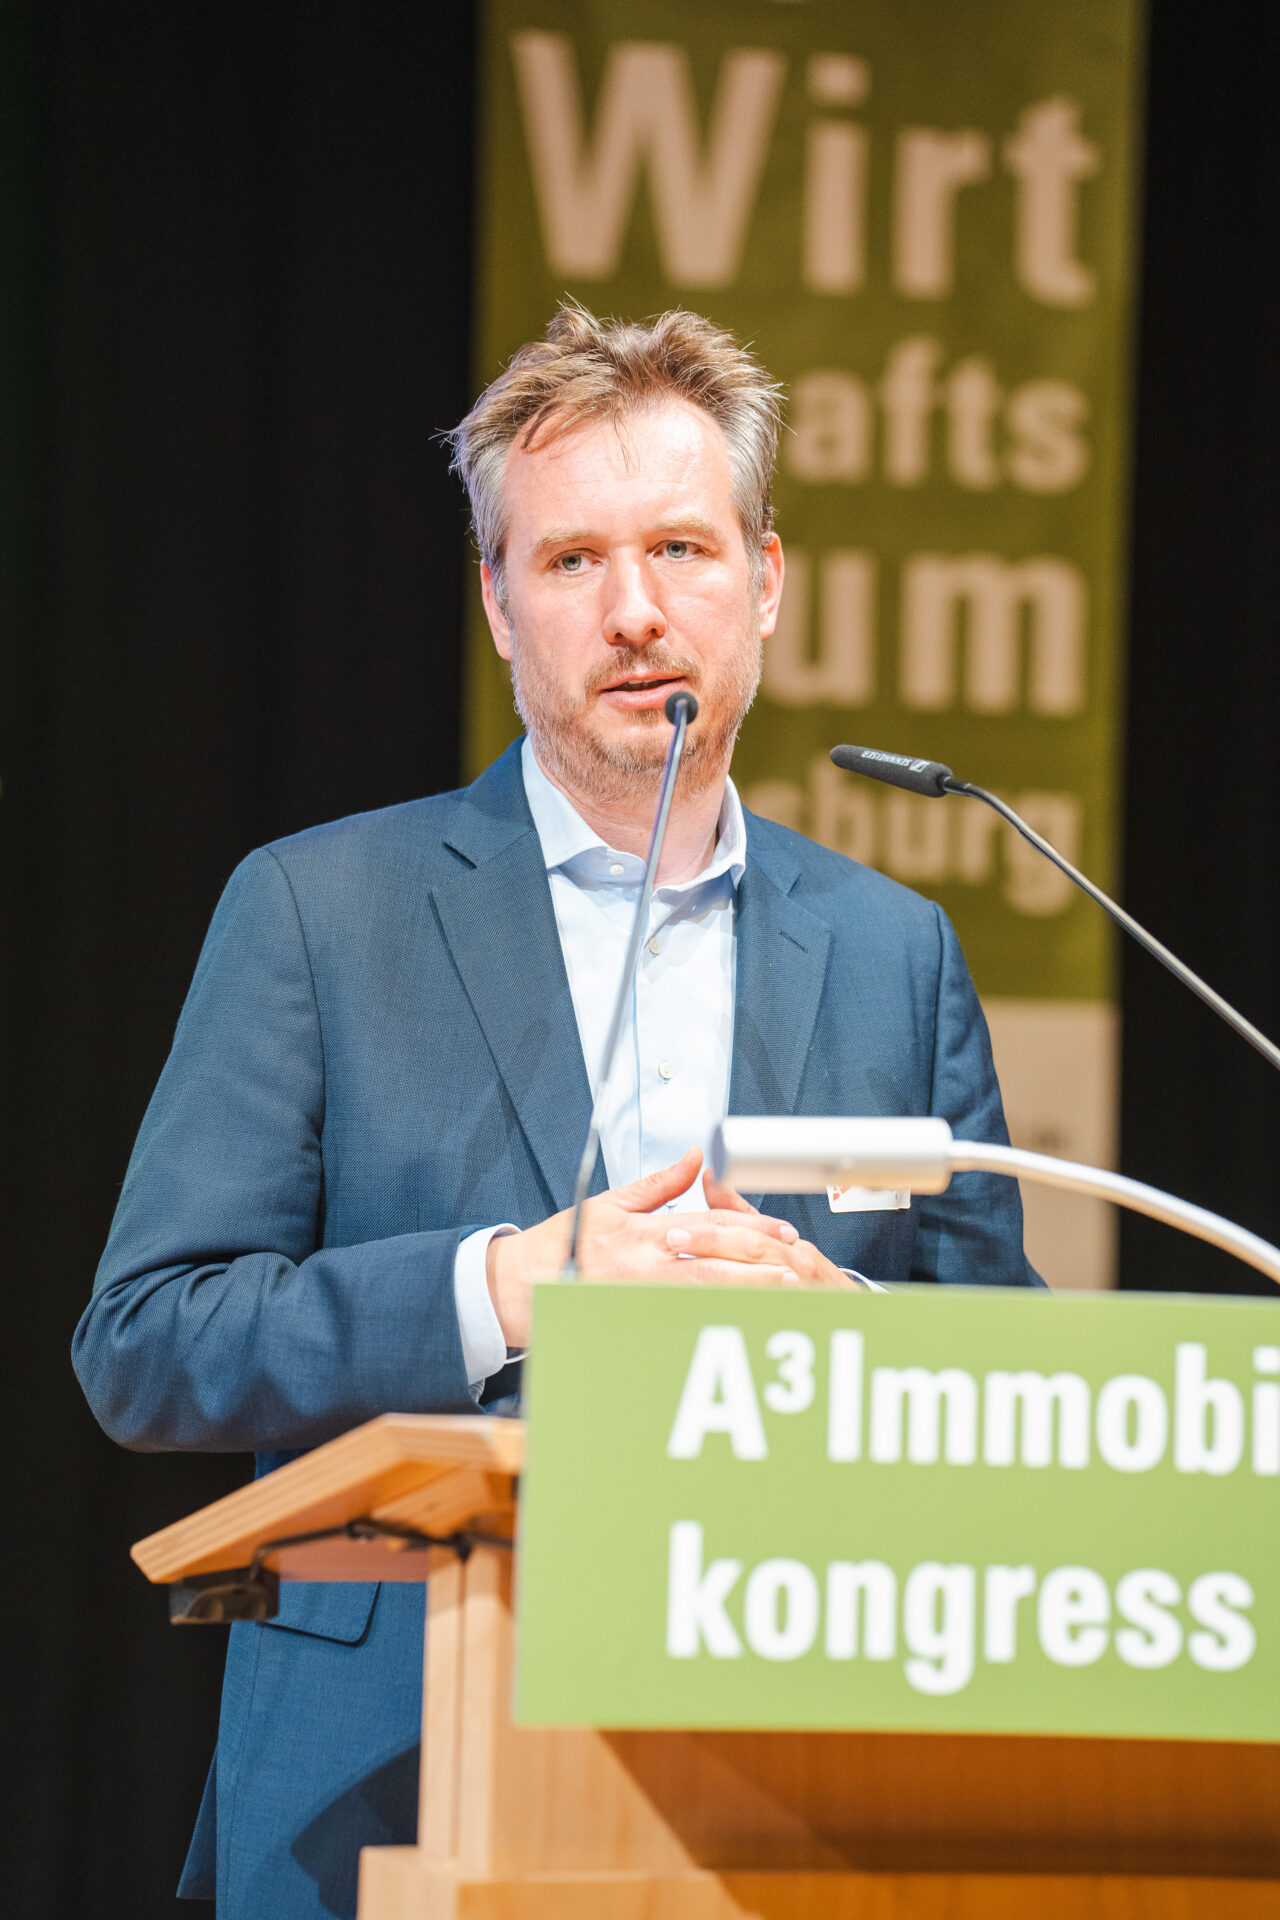 A³ Immobilienkongress: Steffen Kercher, Stadt Augsburg